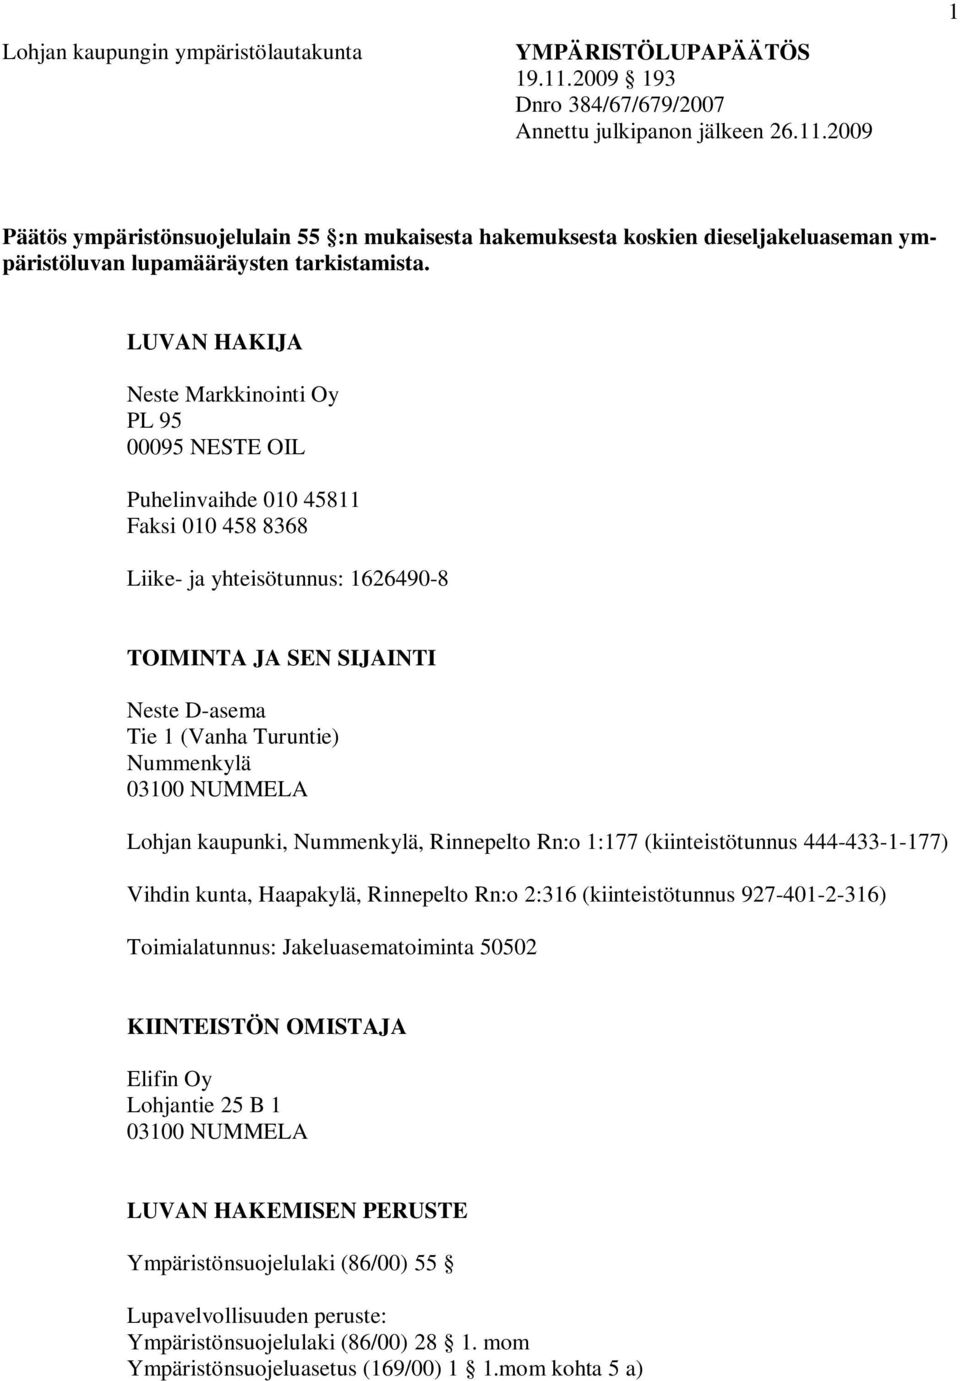 Nummenkylä 03100 NUMMELA Lohjan kaupunki, Nummenkylä, Rinnepelto Rn:o 1:177 (kiinteistötunnus 444-433-1-177) Vihdin kunta, Haapakylä, Rinnepelto Rn:o 2:316 (kiinteistötunnus 927-401-2-316)